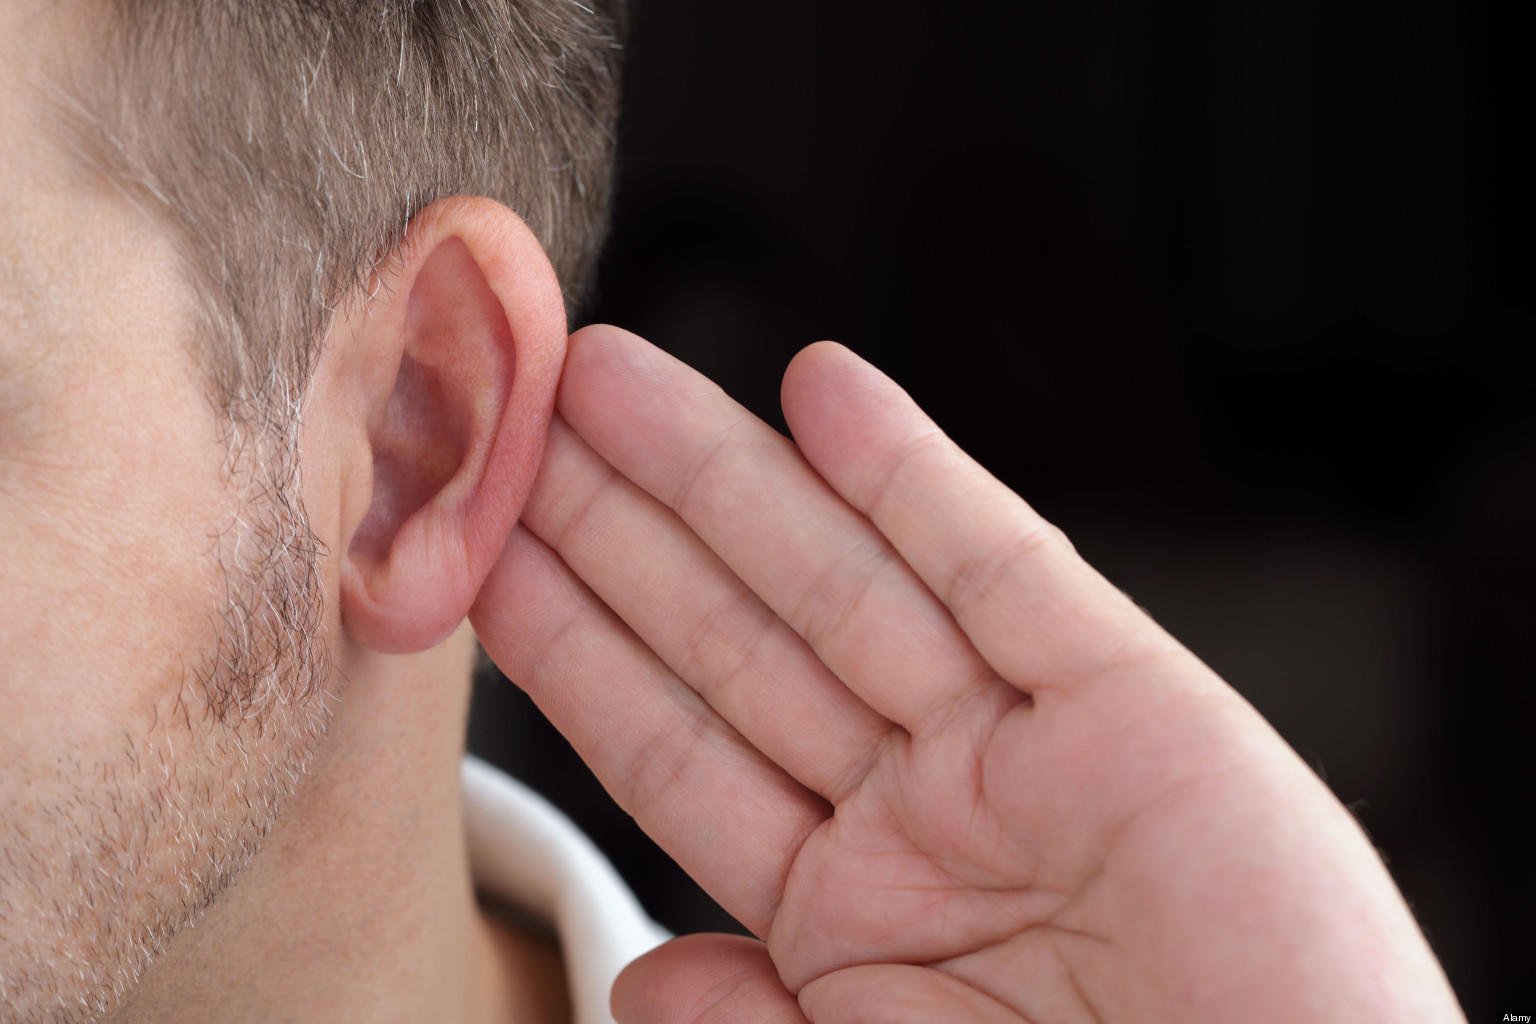 Γονιδιακή θεραπεία αποκατέστησε την ακοή σε κωφά πειραματόζωα